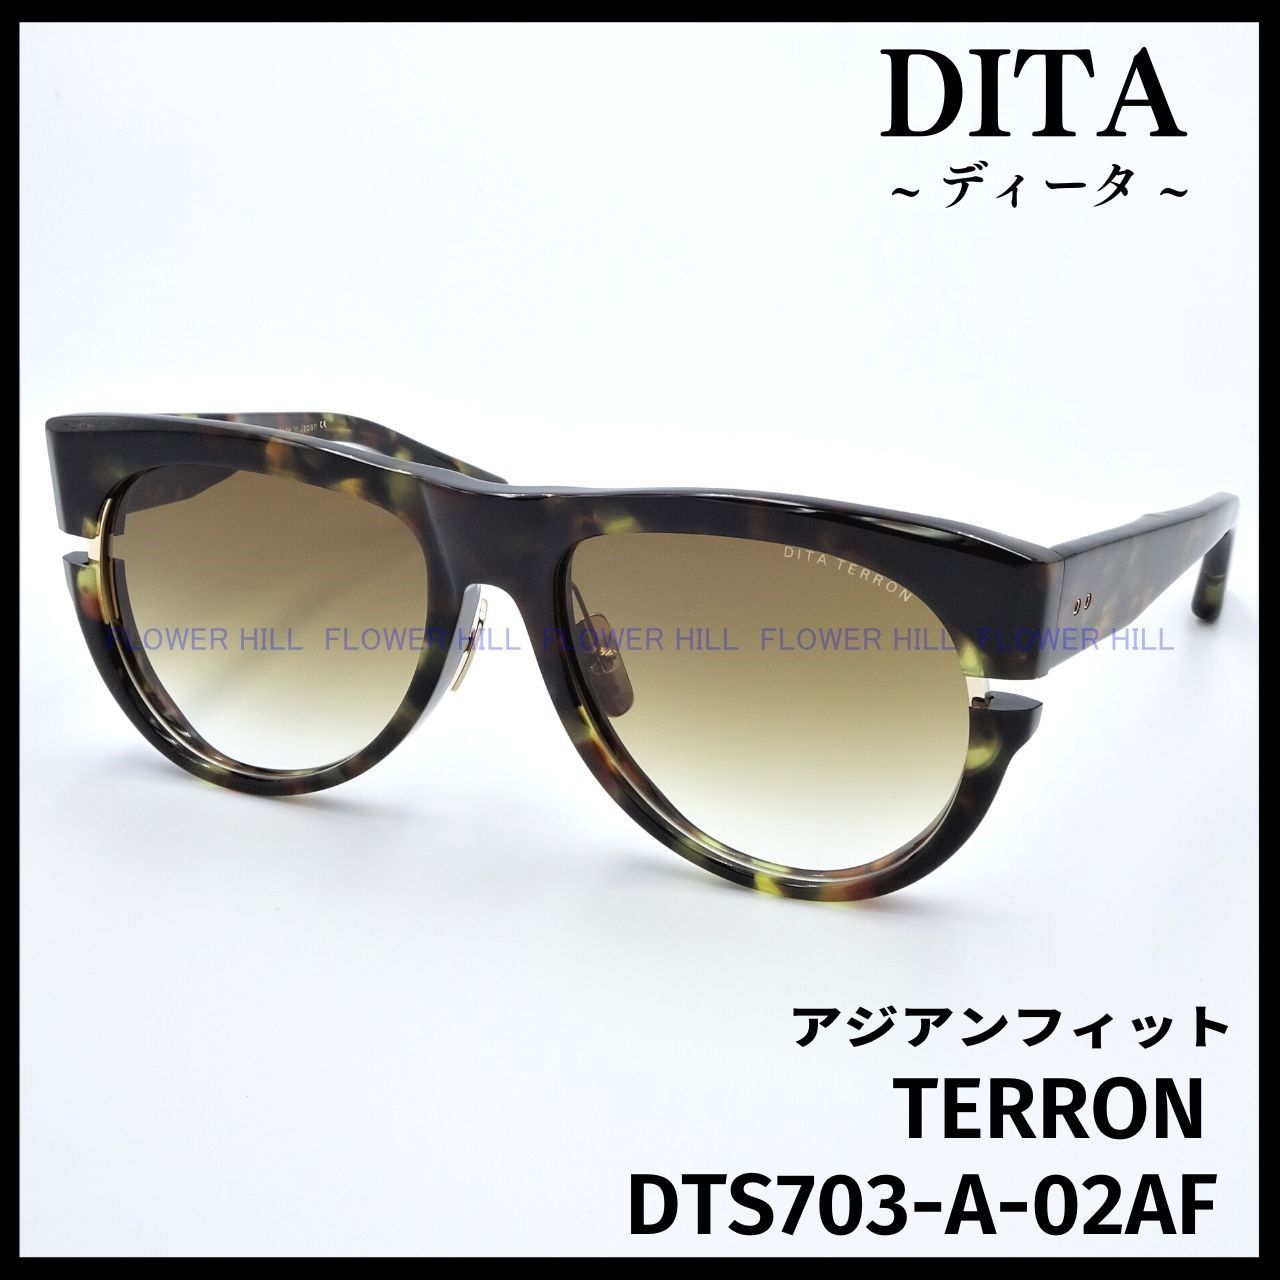 DITA サングラス TERRON DTS703-A-02AF ハバナ/ゴールド